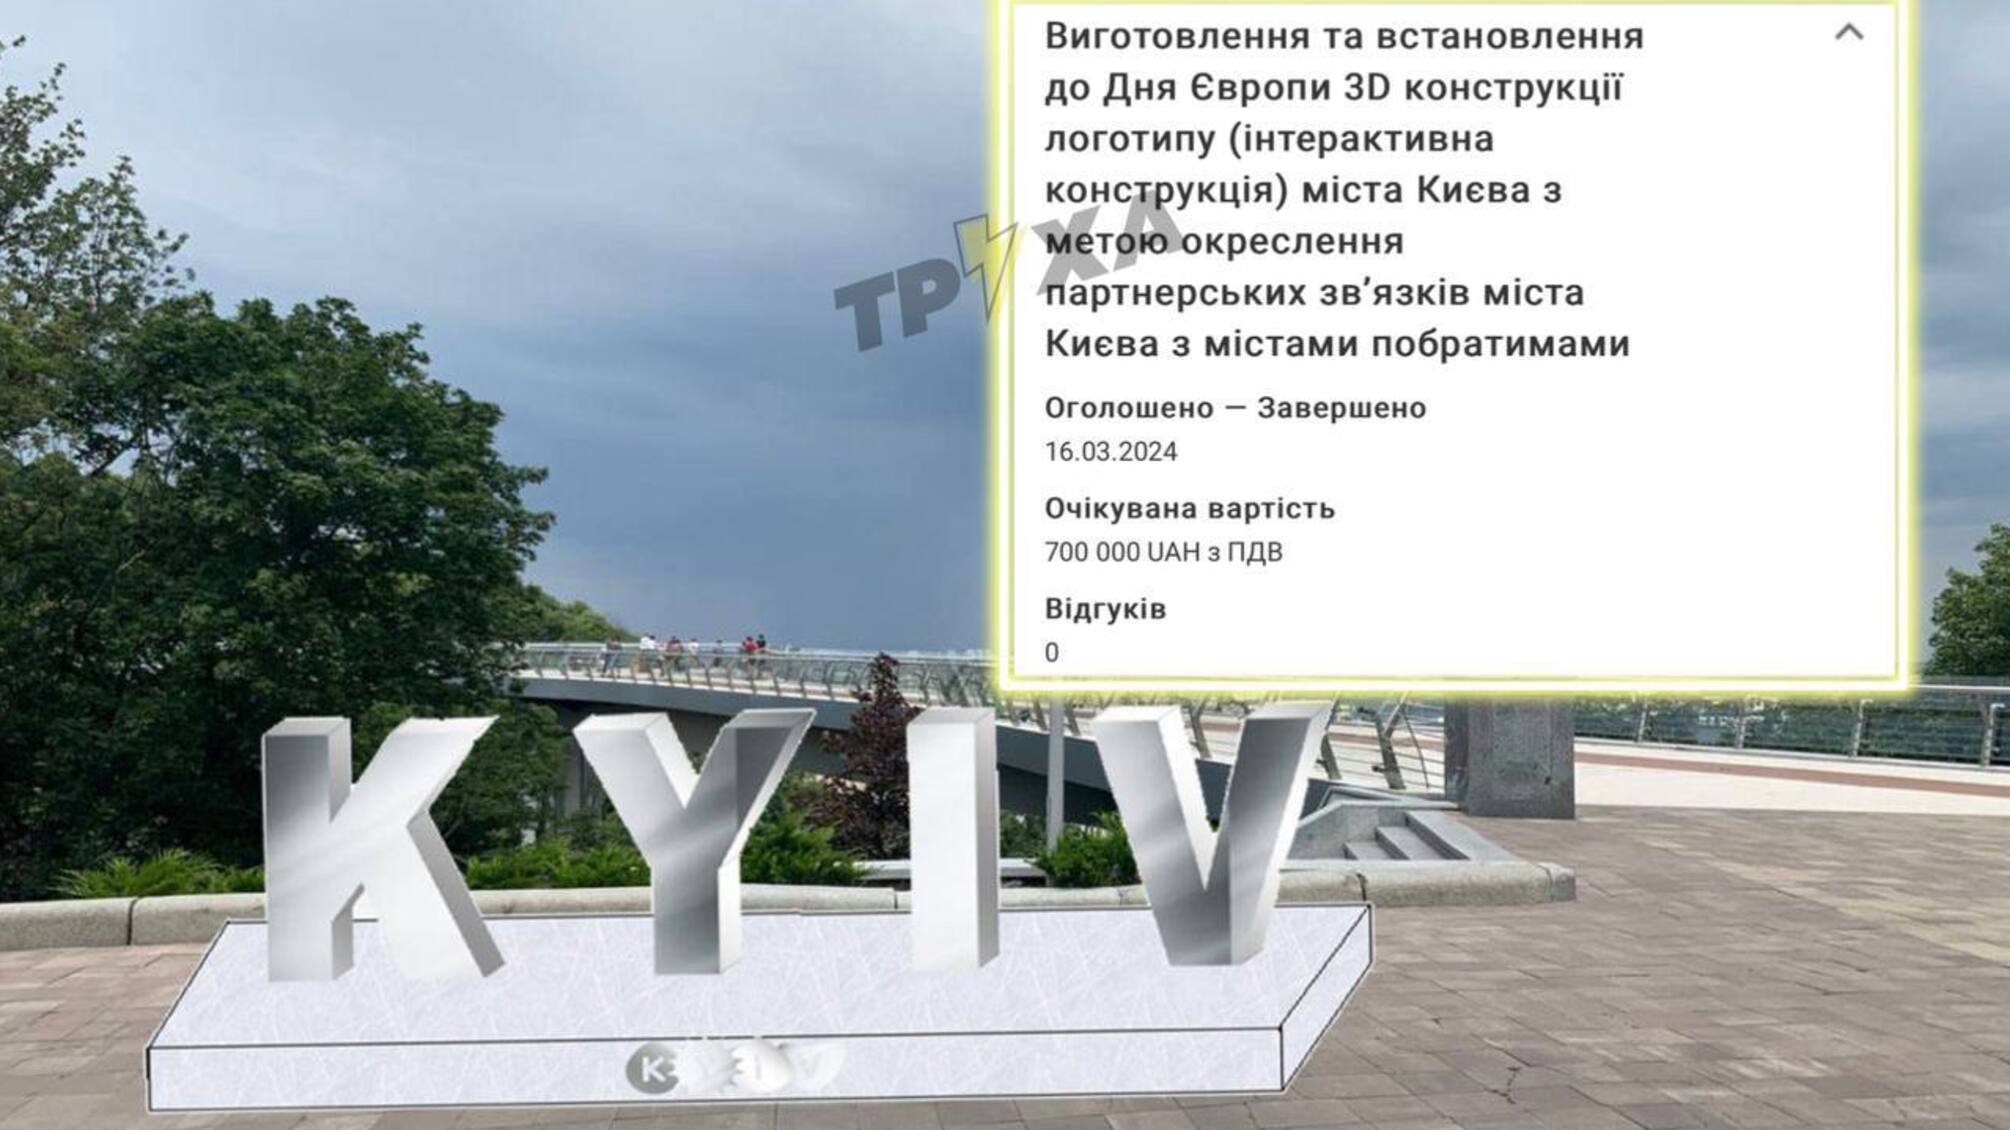 В Киеве планируют установить 3D конструкцию логотипа за 700 тыс грн